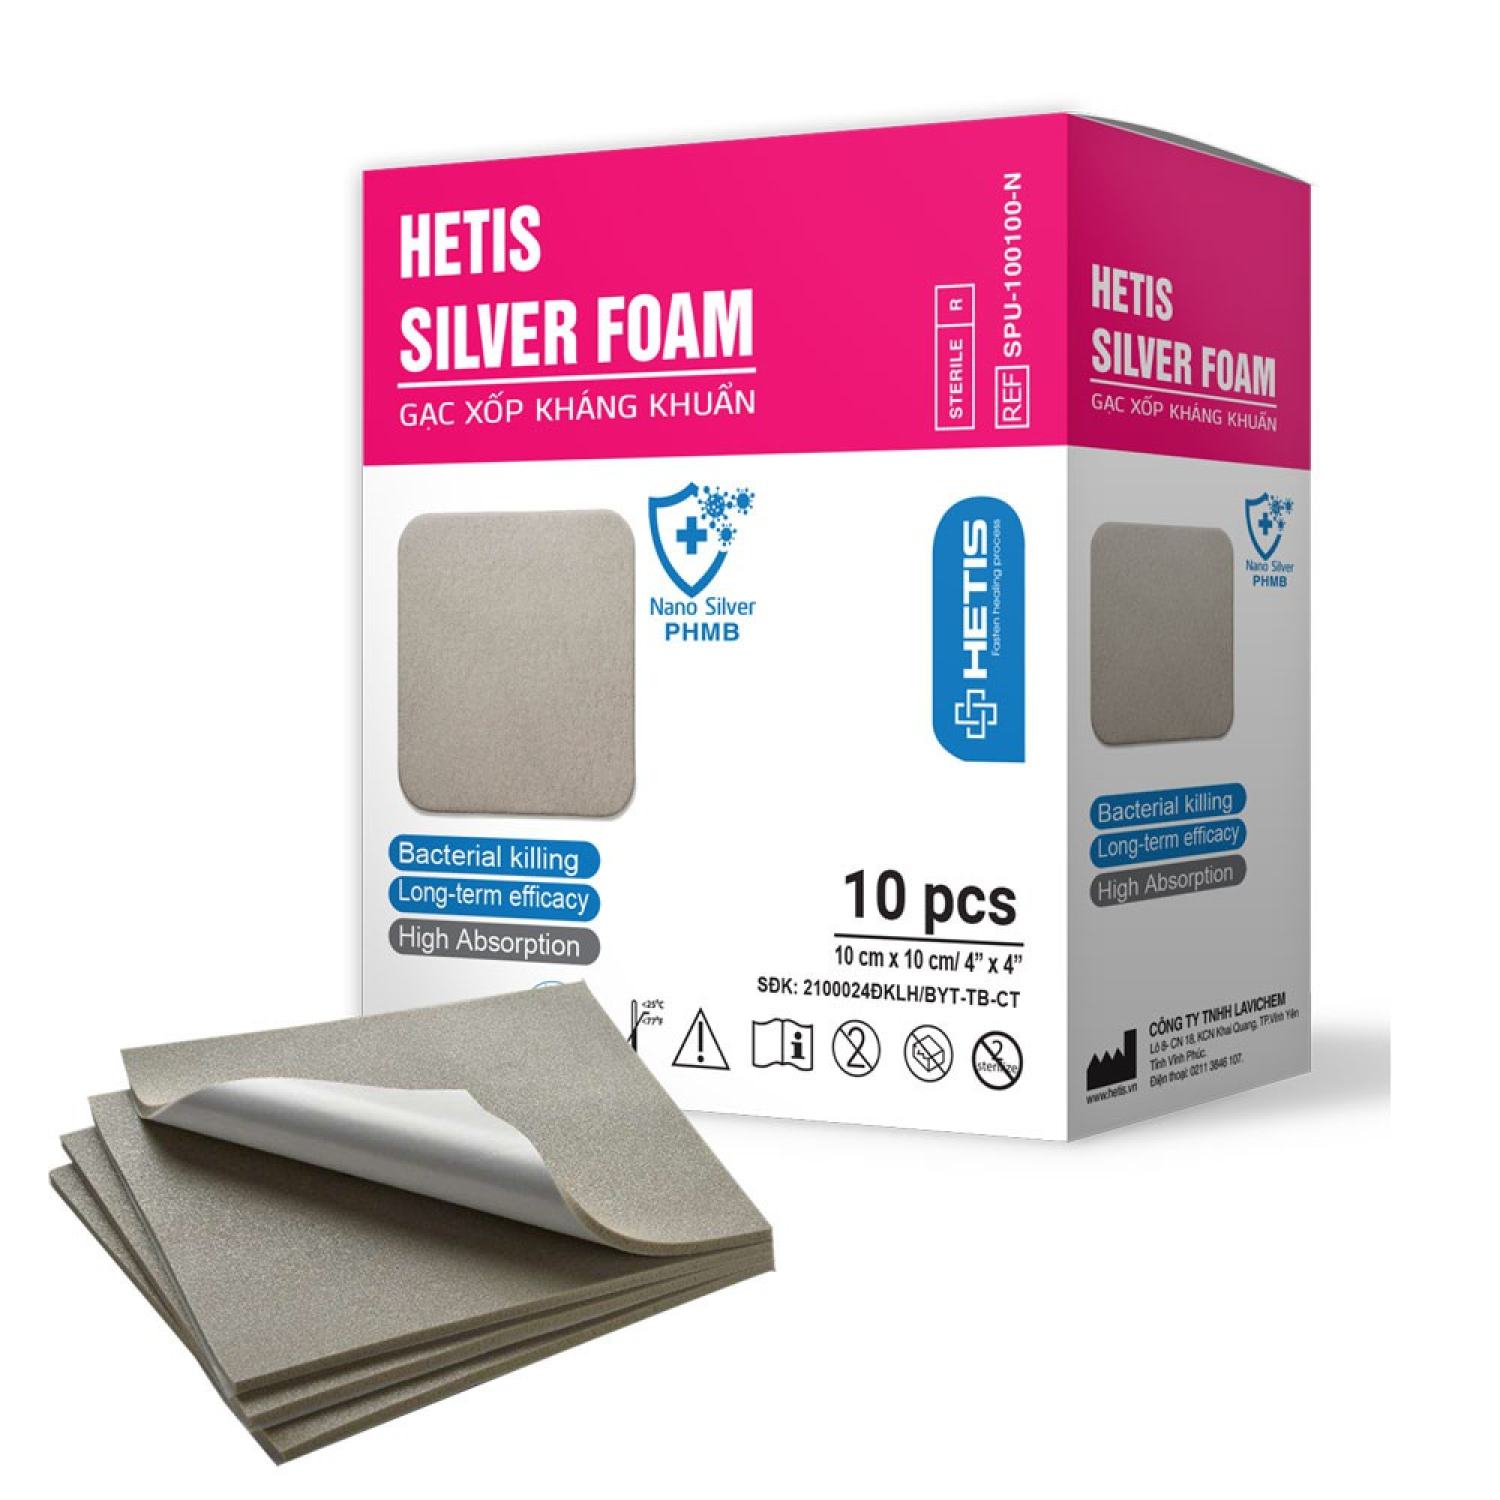 Hetis Silver Foam - Gạc xốp kháng khuẩn hút dịch chống tỳ đè tinh chất Bạc